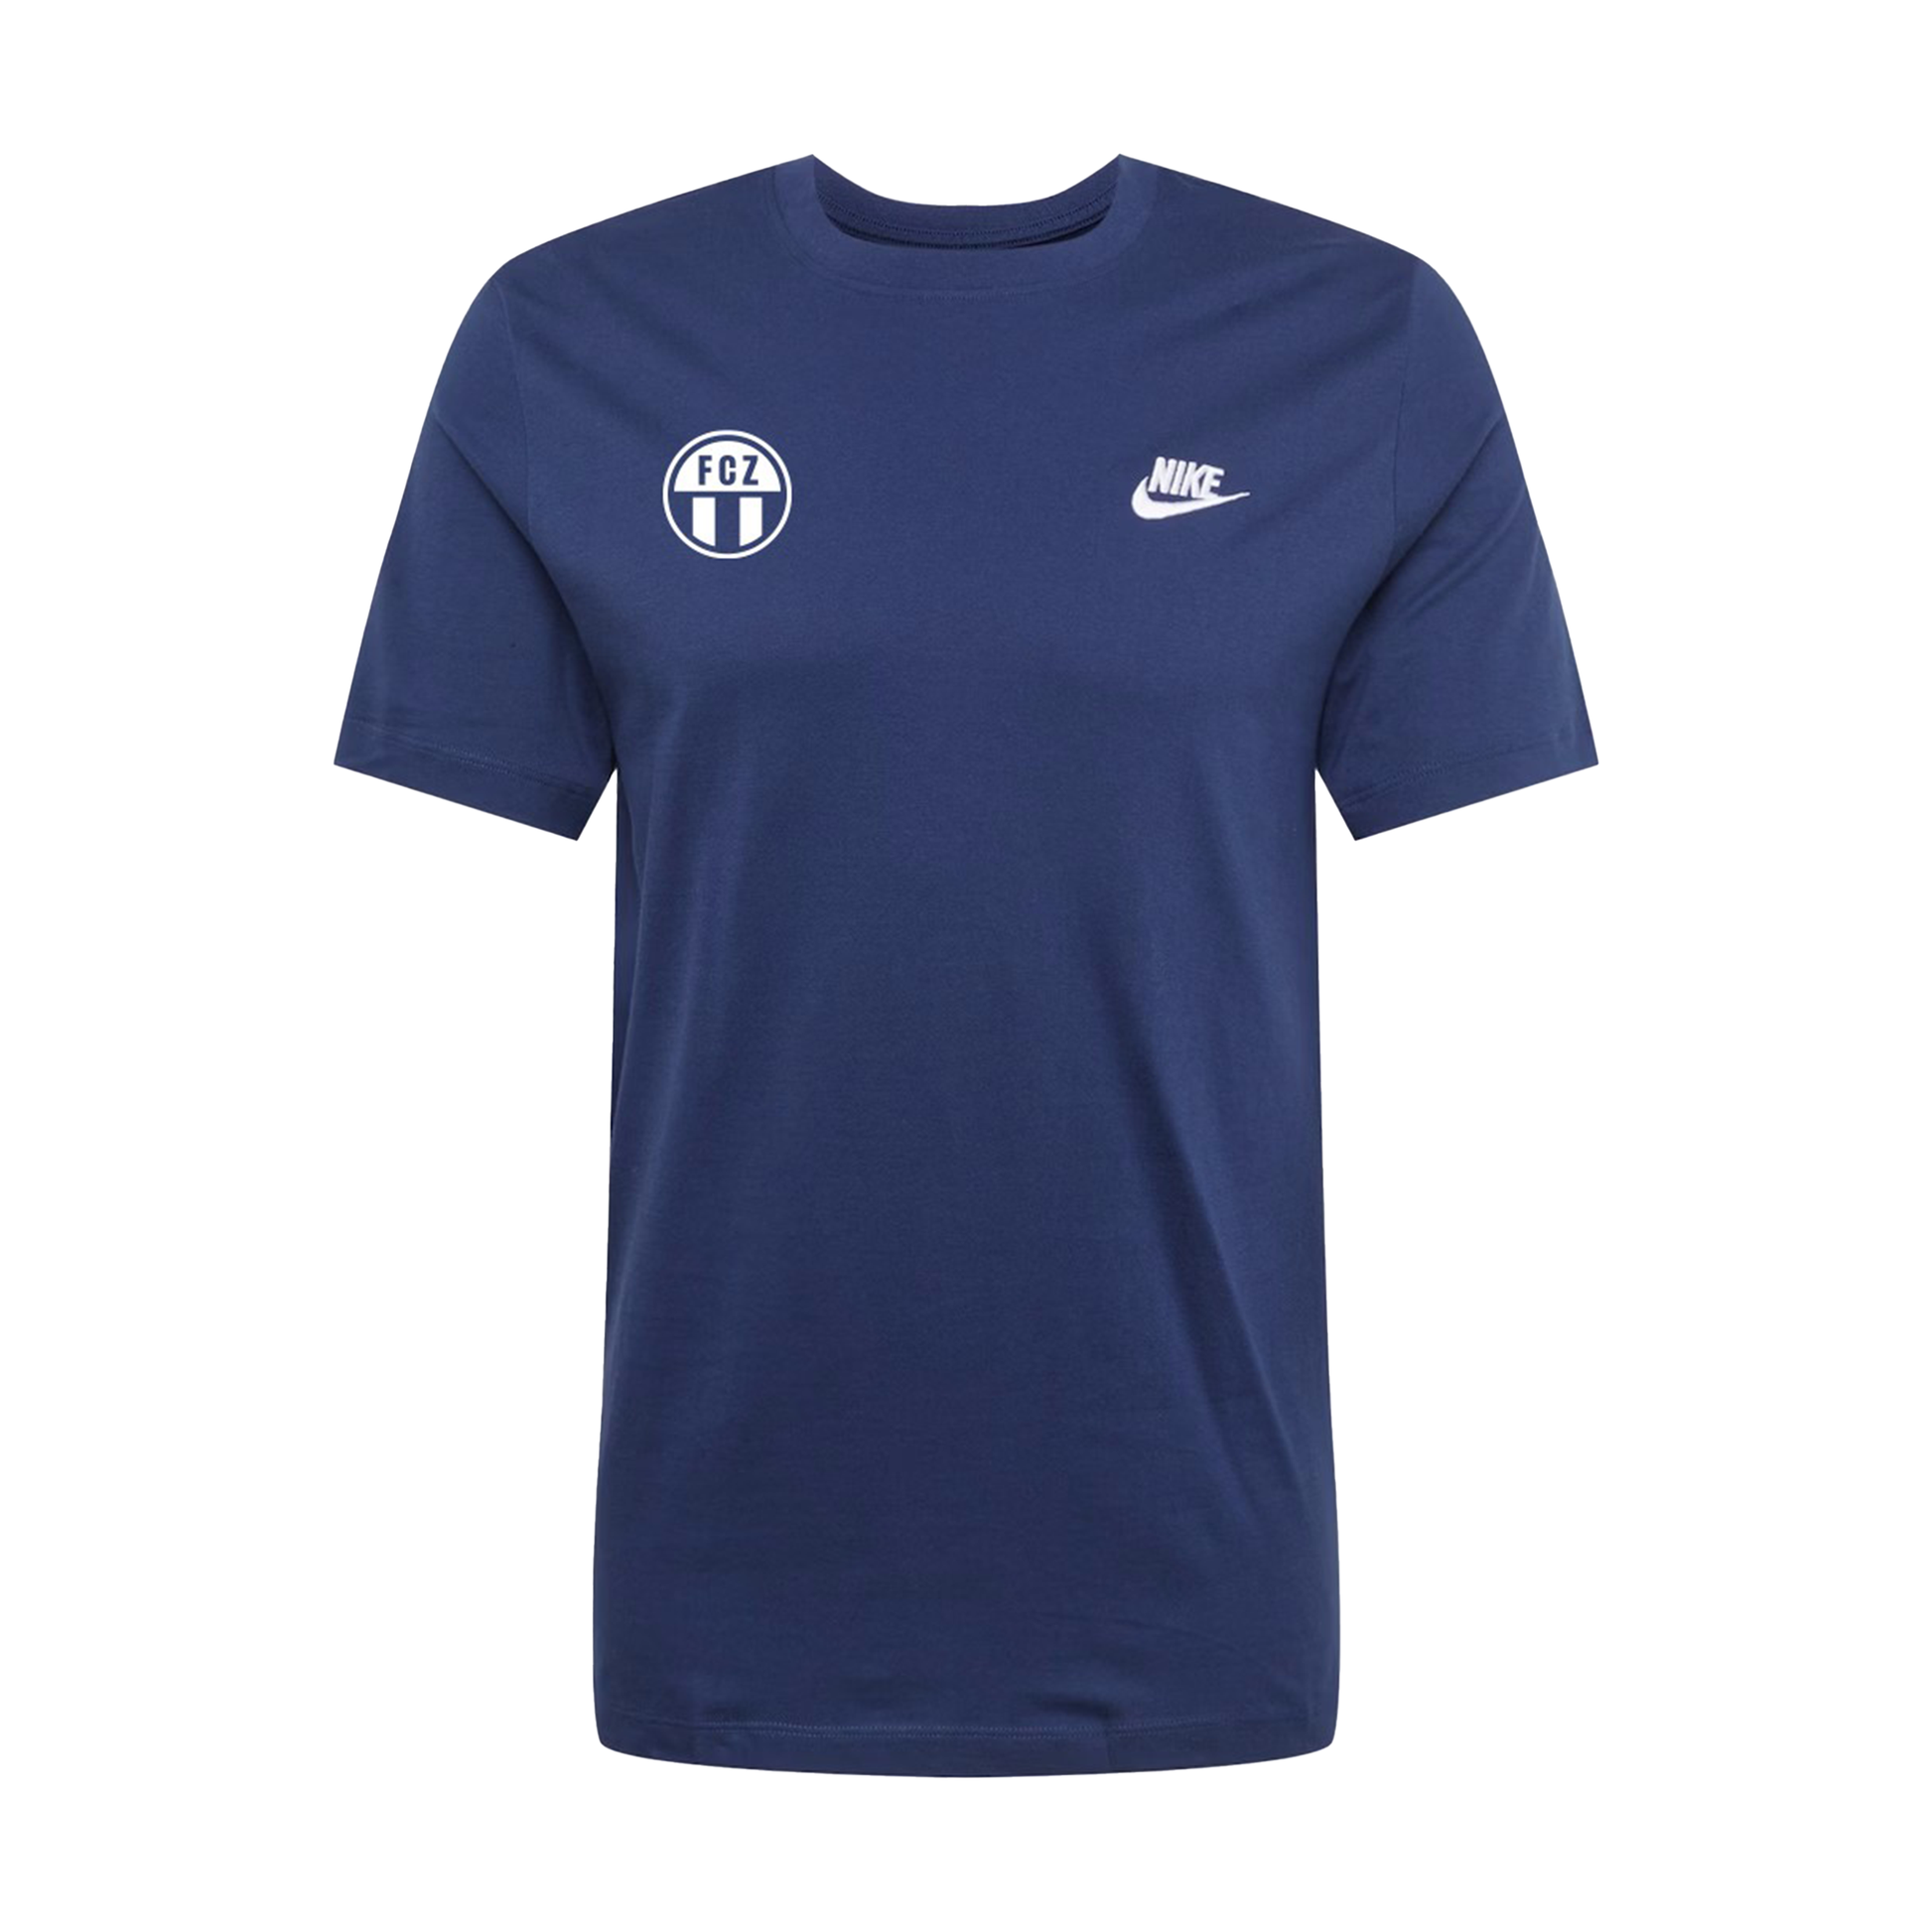 Shirt Nike Freizeit dunkelblau